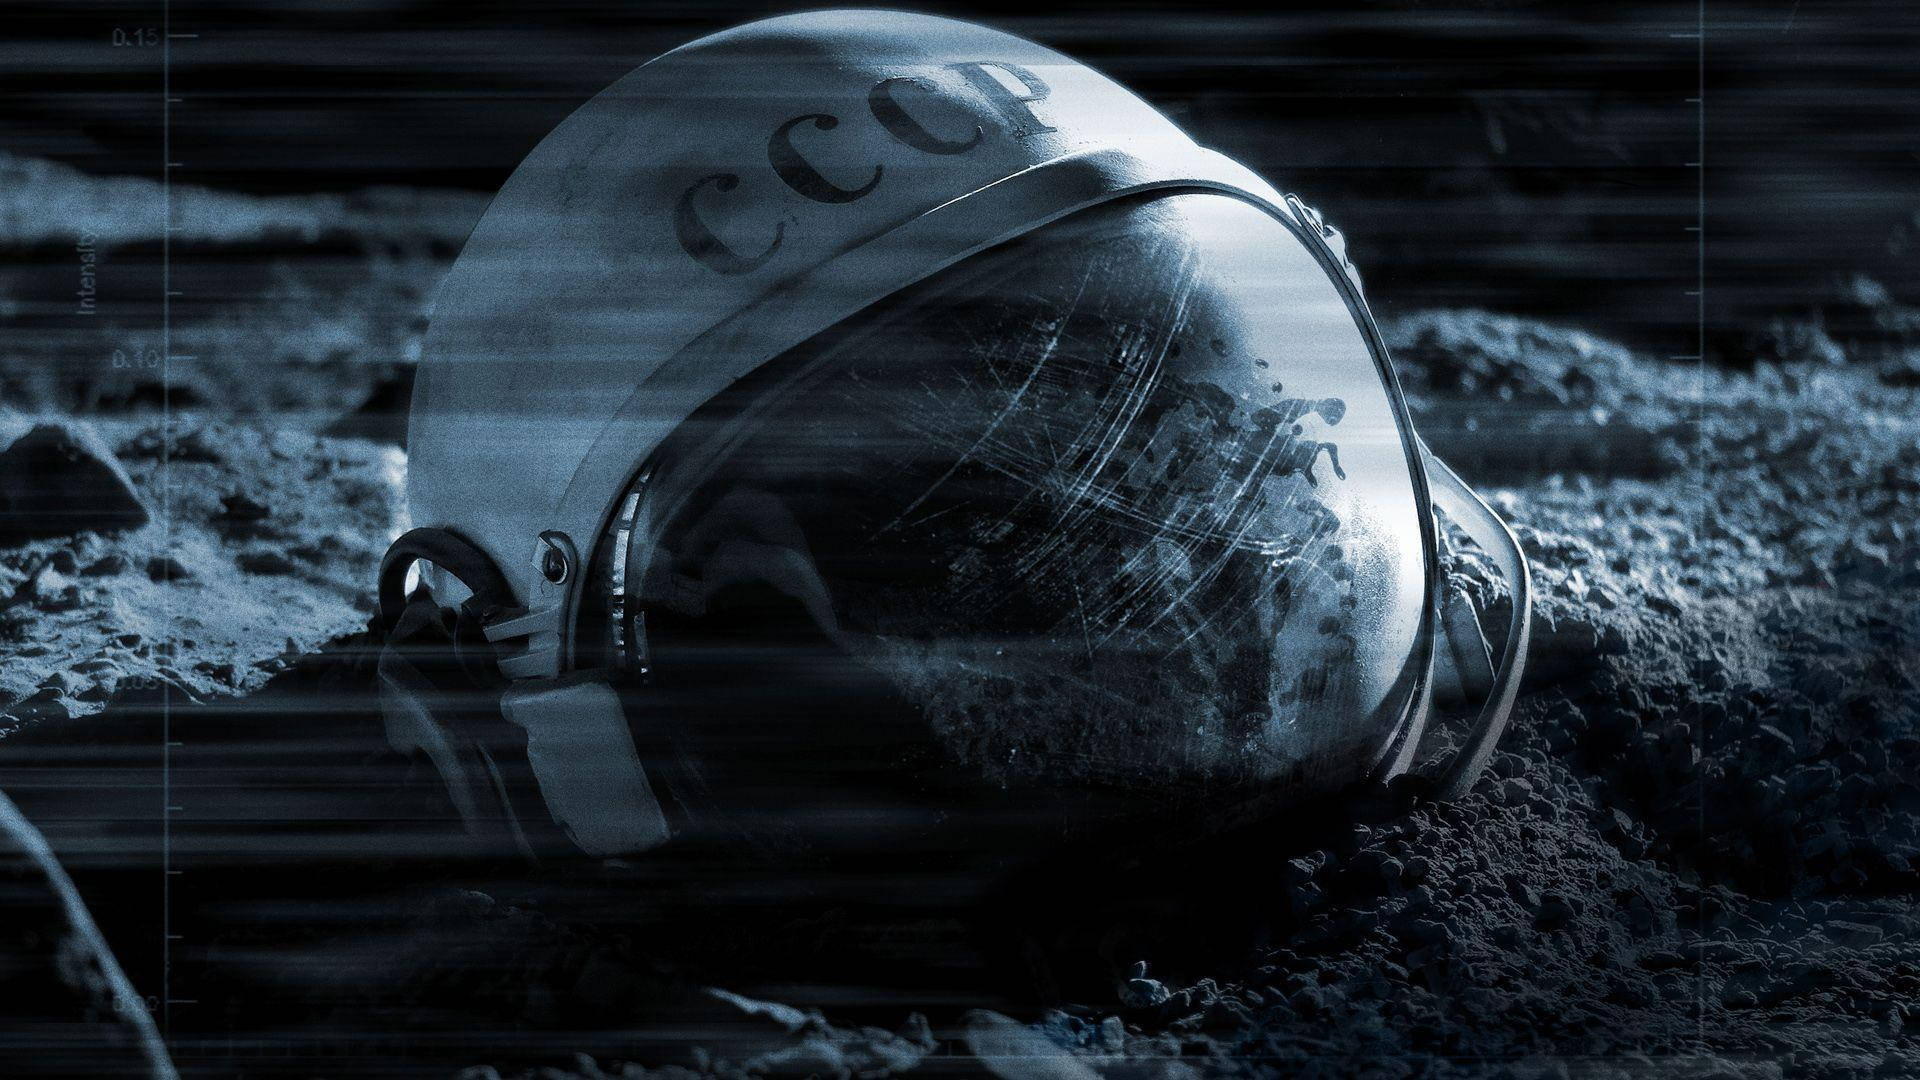 Magnificent Image Of Spaceman Helmet Wallpaper